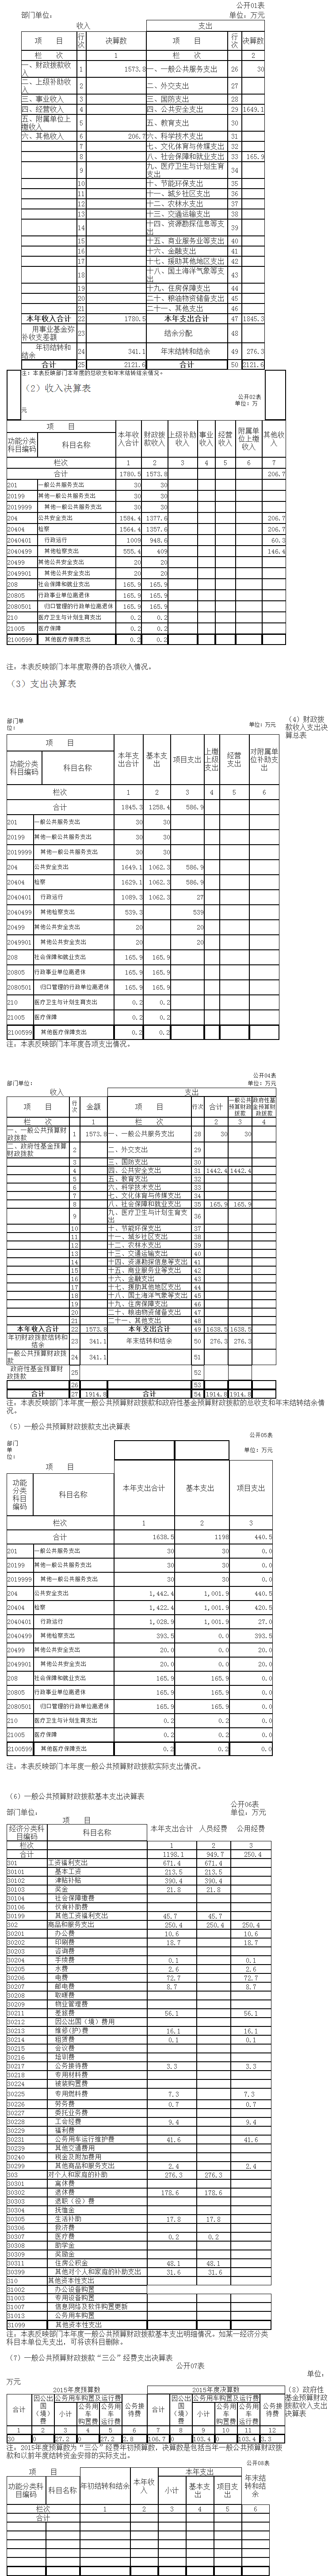 陇南市人民检察院2015年度部门决算公开.png